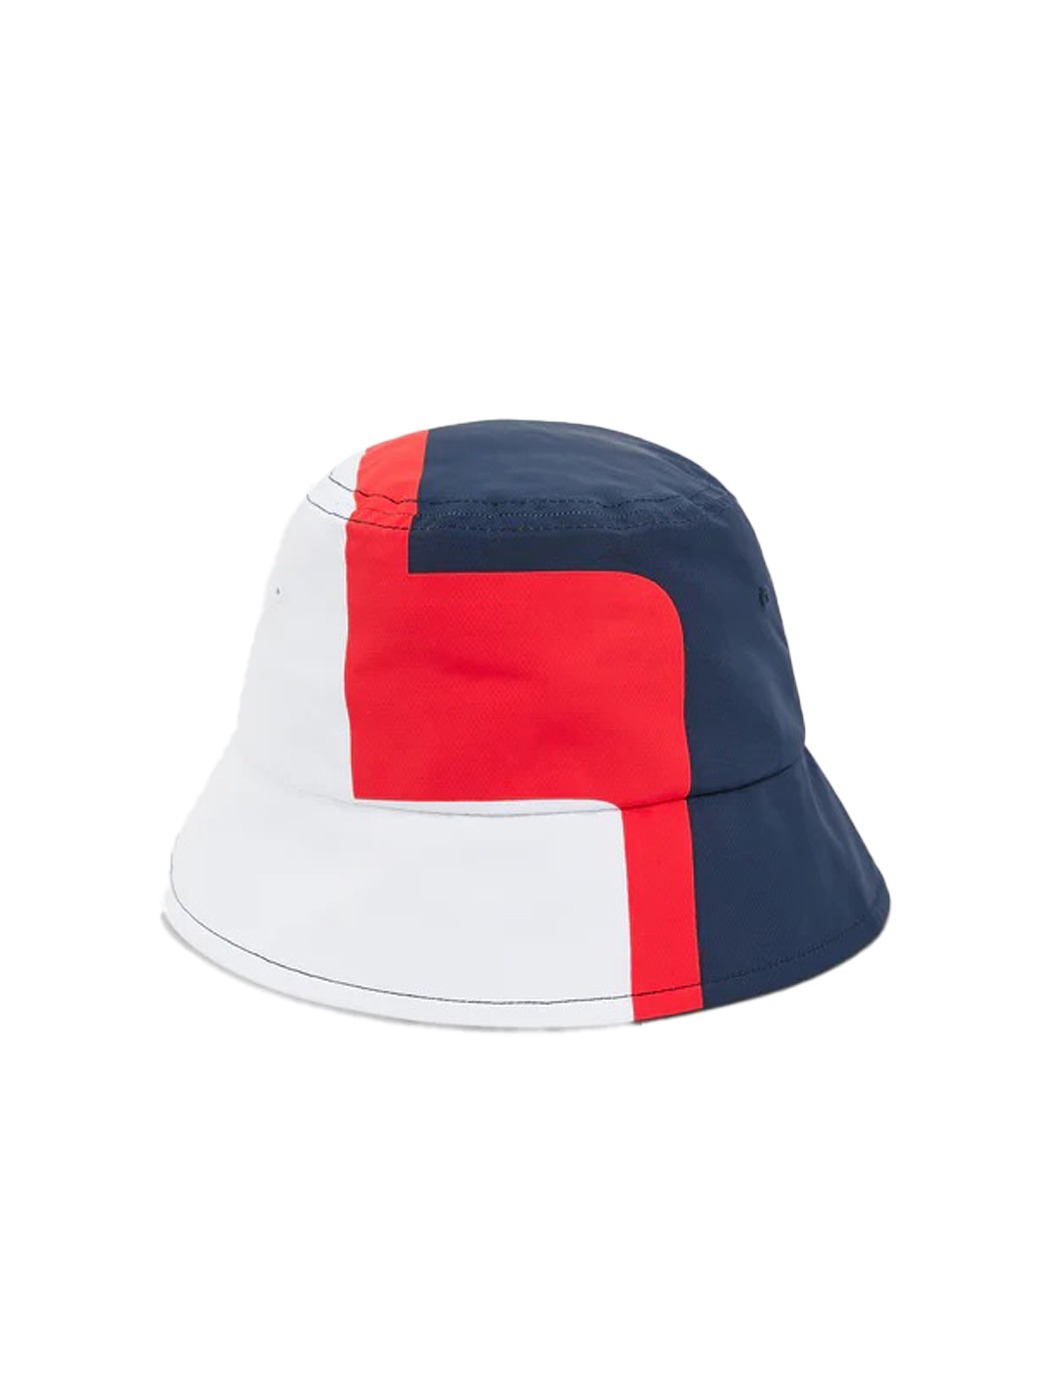 제이린드버그 SS23 남성 골프 모자 브리지 버킷햇 모자 (네이비)